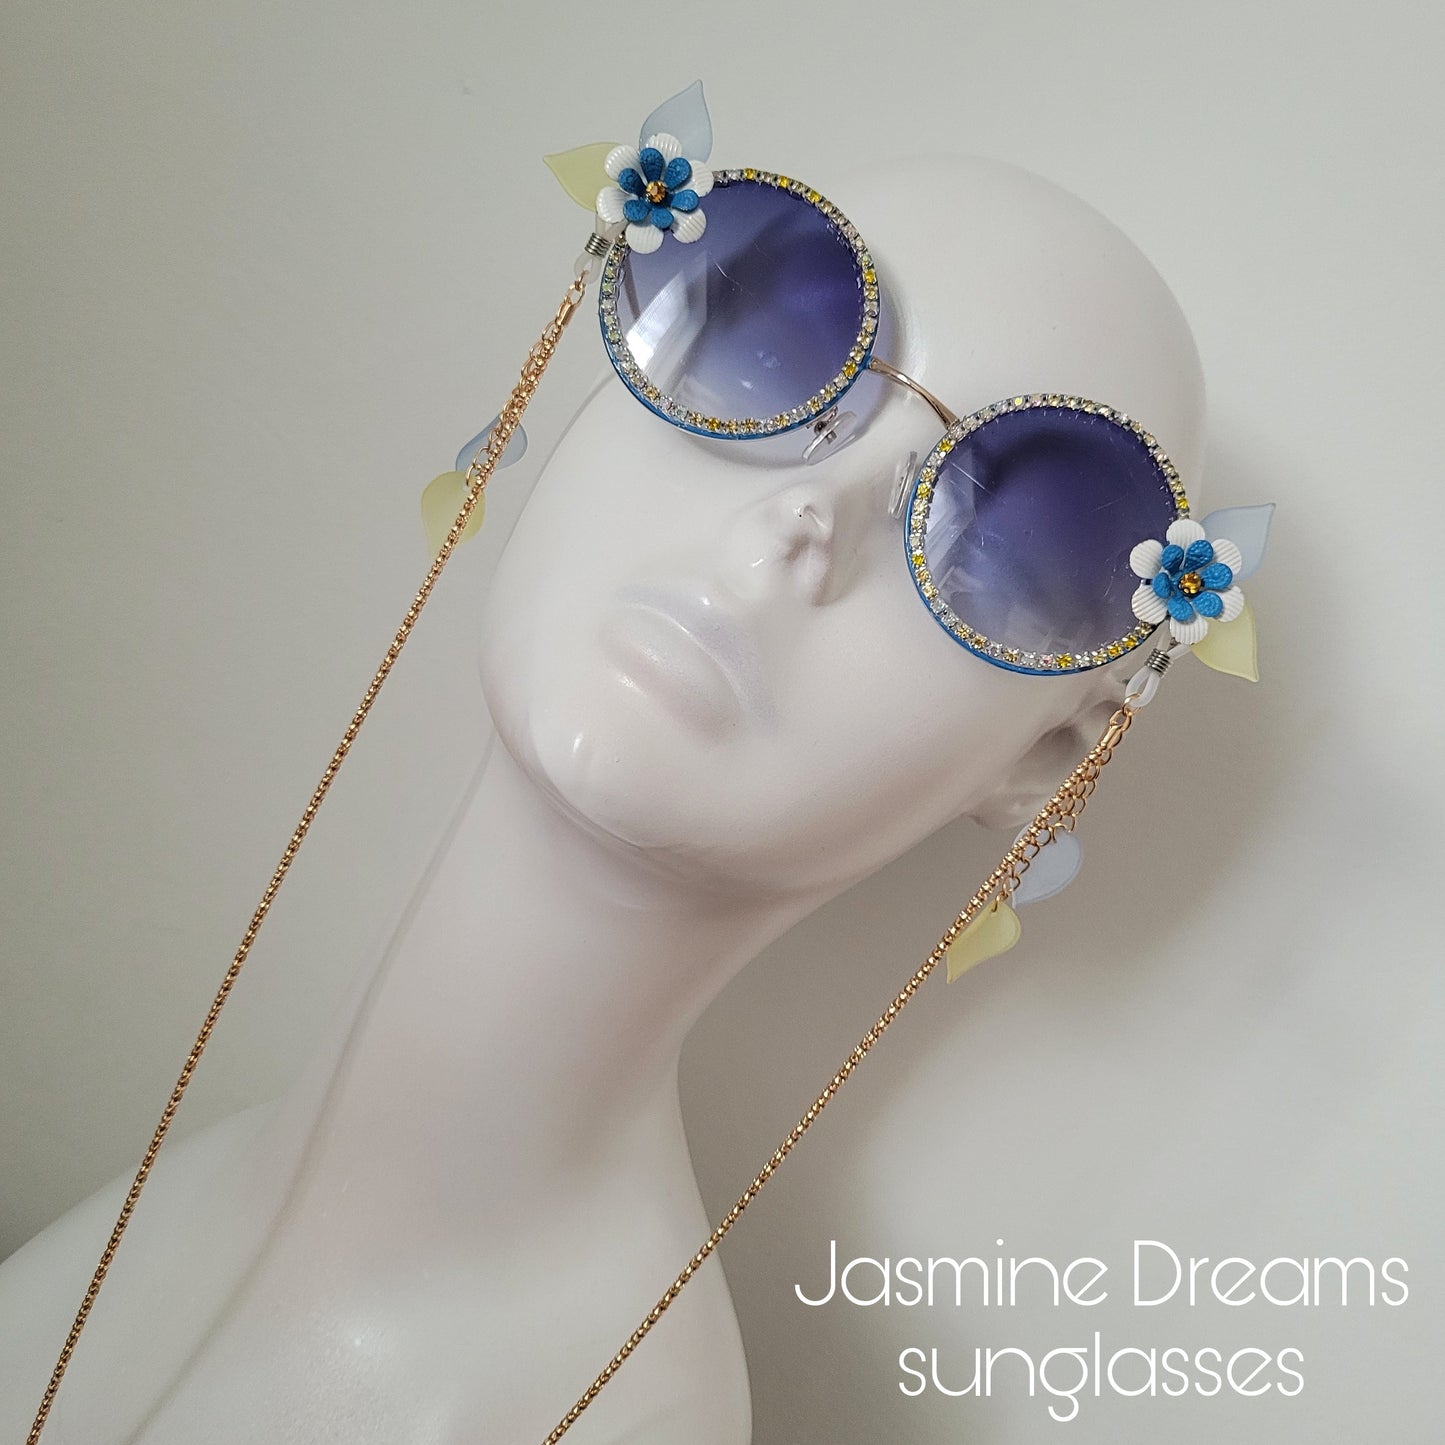 Bumblebee Dreams collection: the Jasmine Dreams Sunglasses (Göteborg 400 år edition)